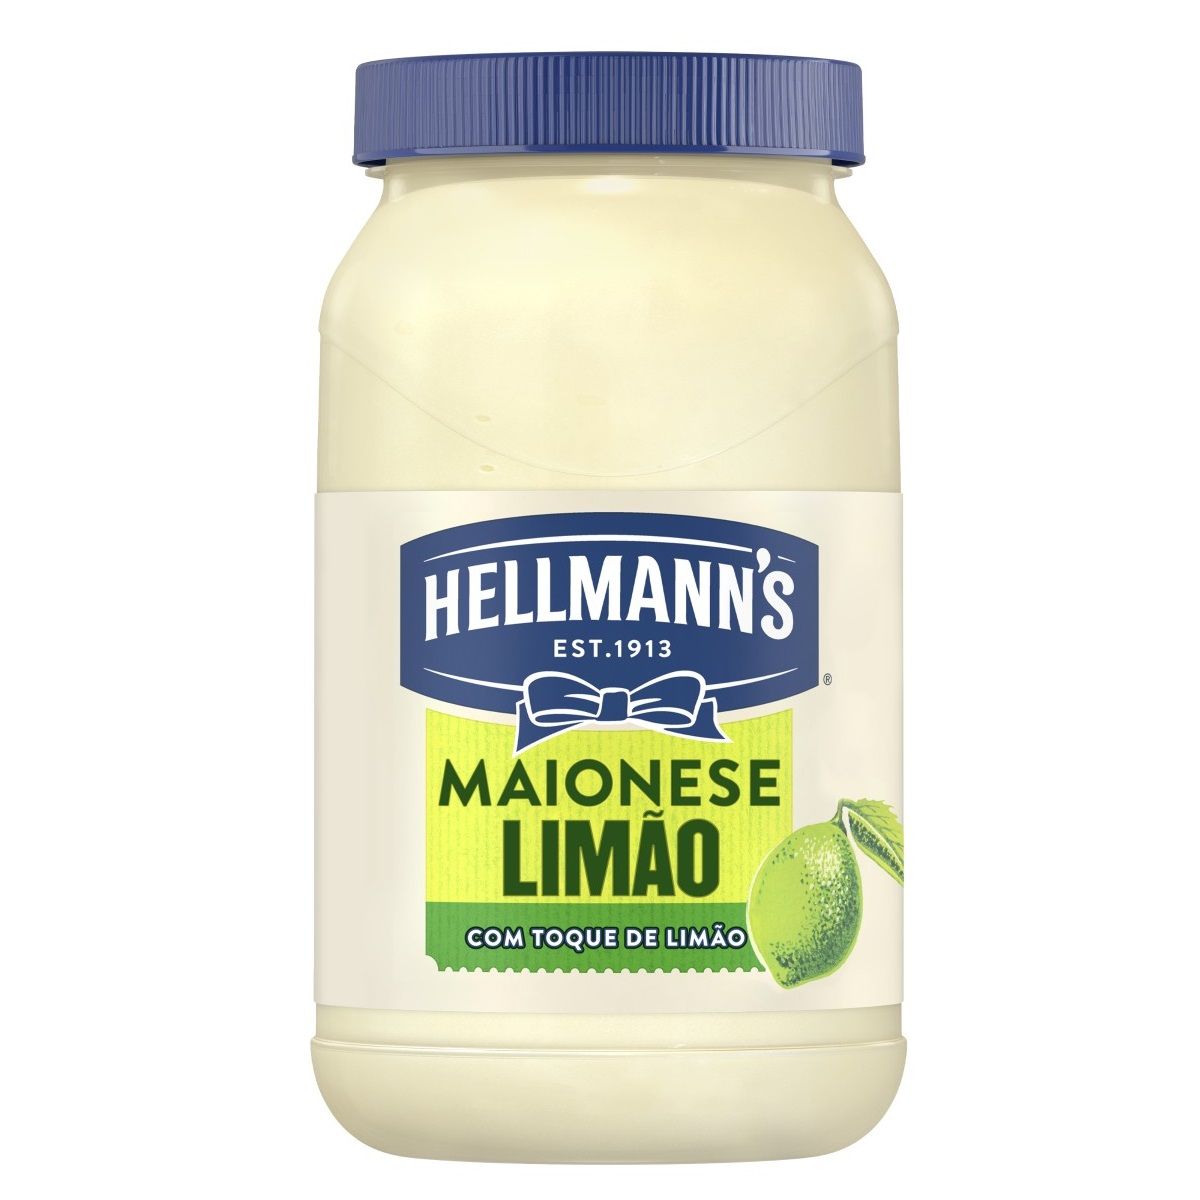 Maionese Hellmann's Limão 500g